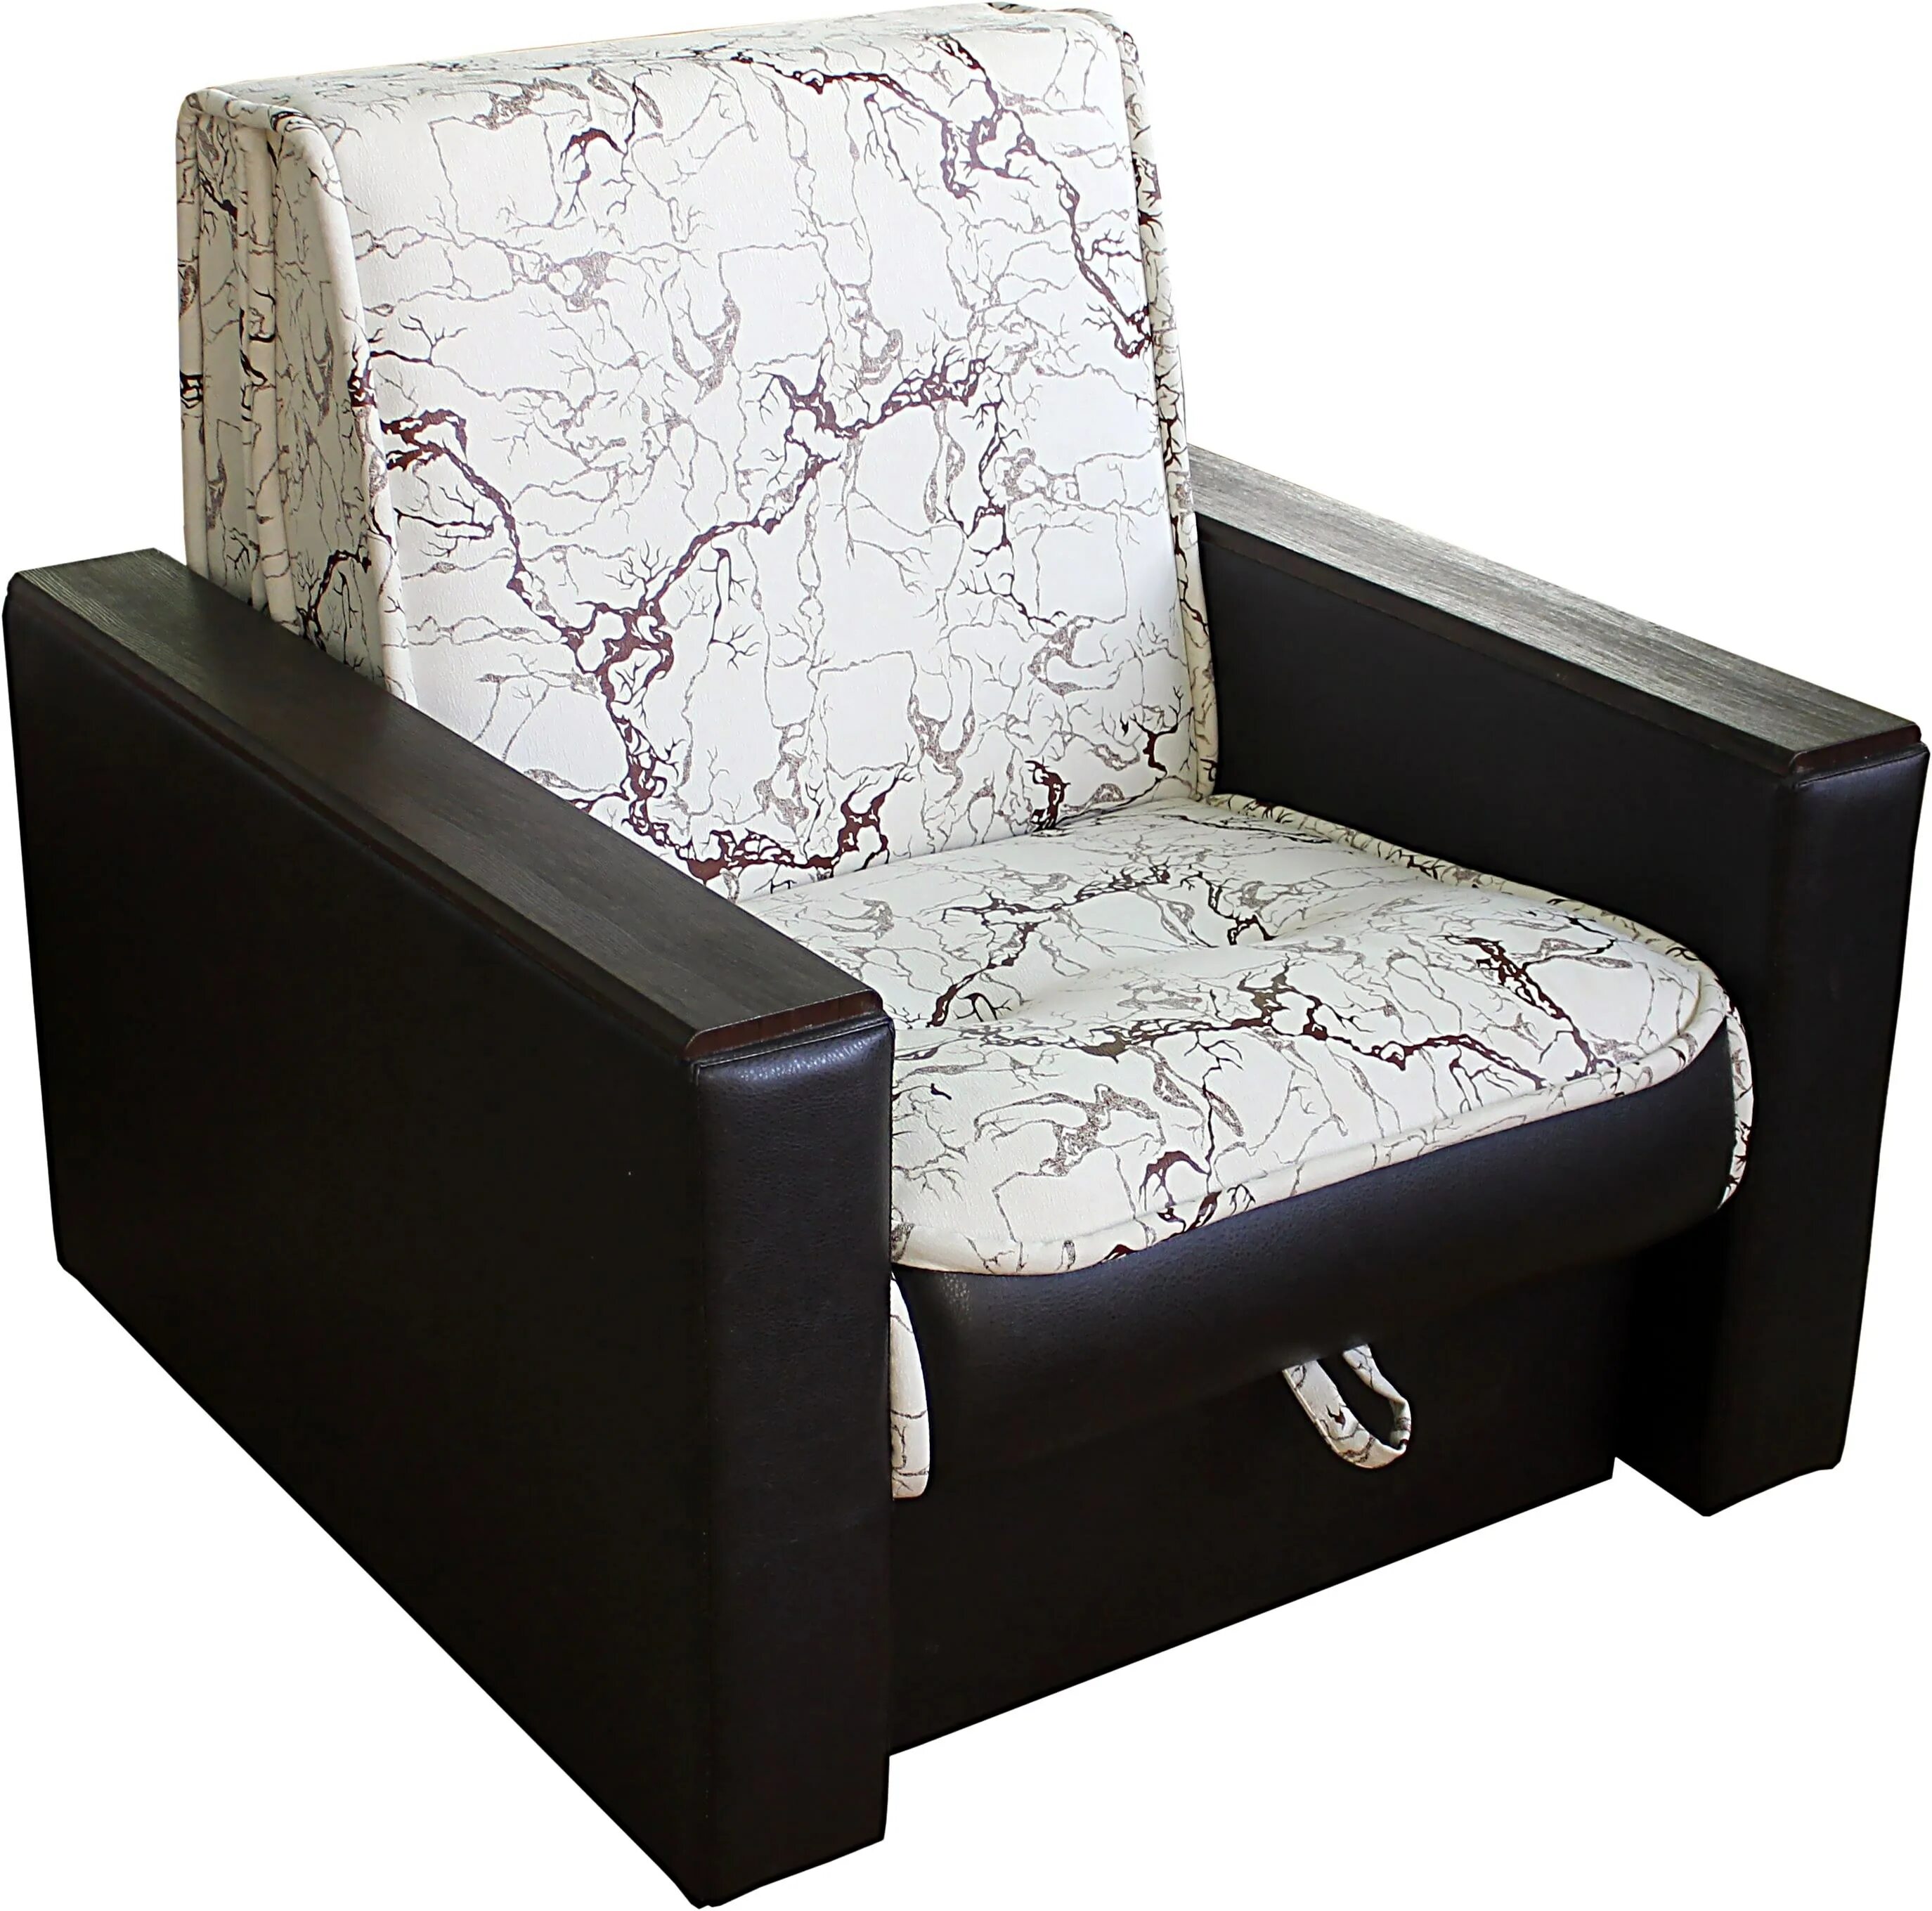 Кресло-кровать "Элегант 13 ПБ". Кресло кровать Элегант. Кресло диван раскладное. Раскладное кресло-кровать. Куплю кресло кровать недорого екатеринбург